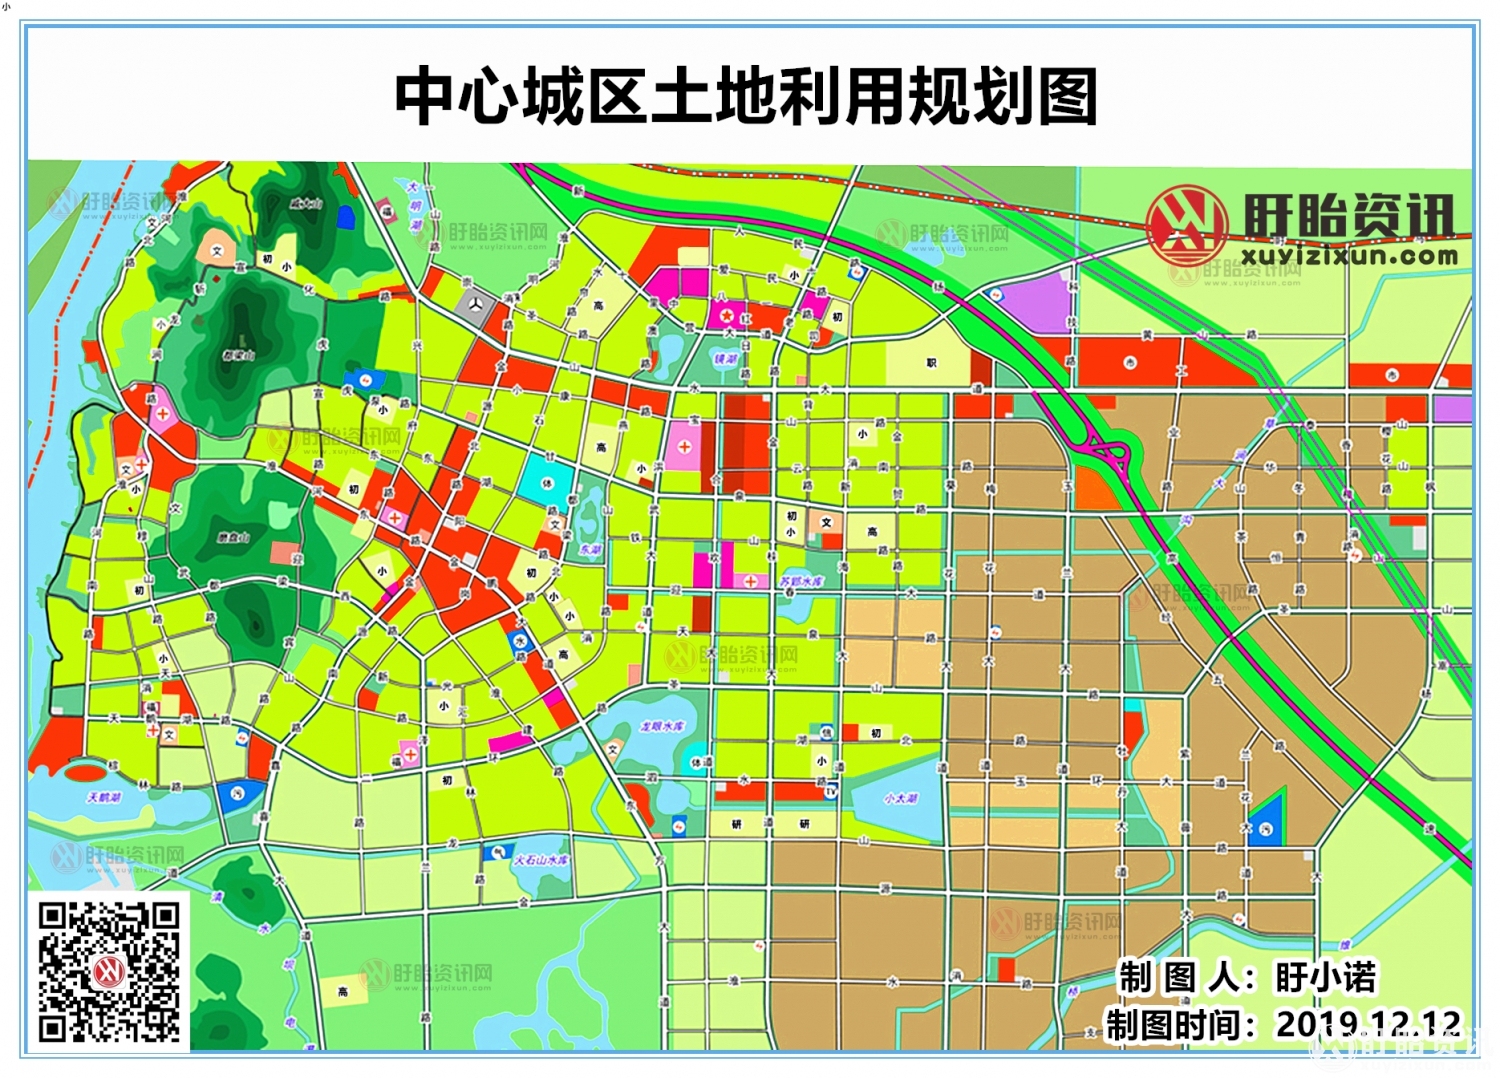 中心城区土地利用规划图1.png